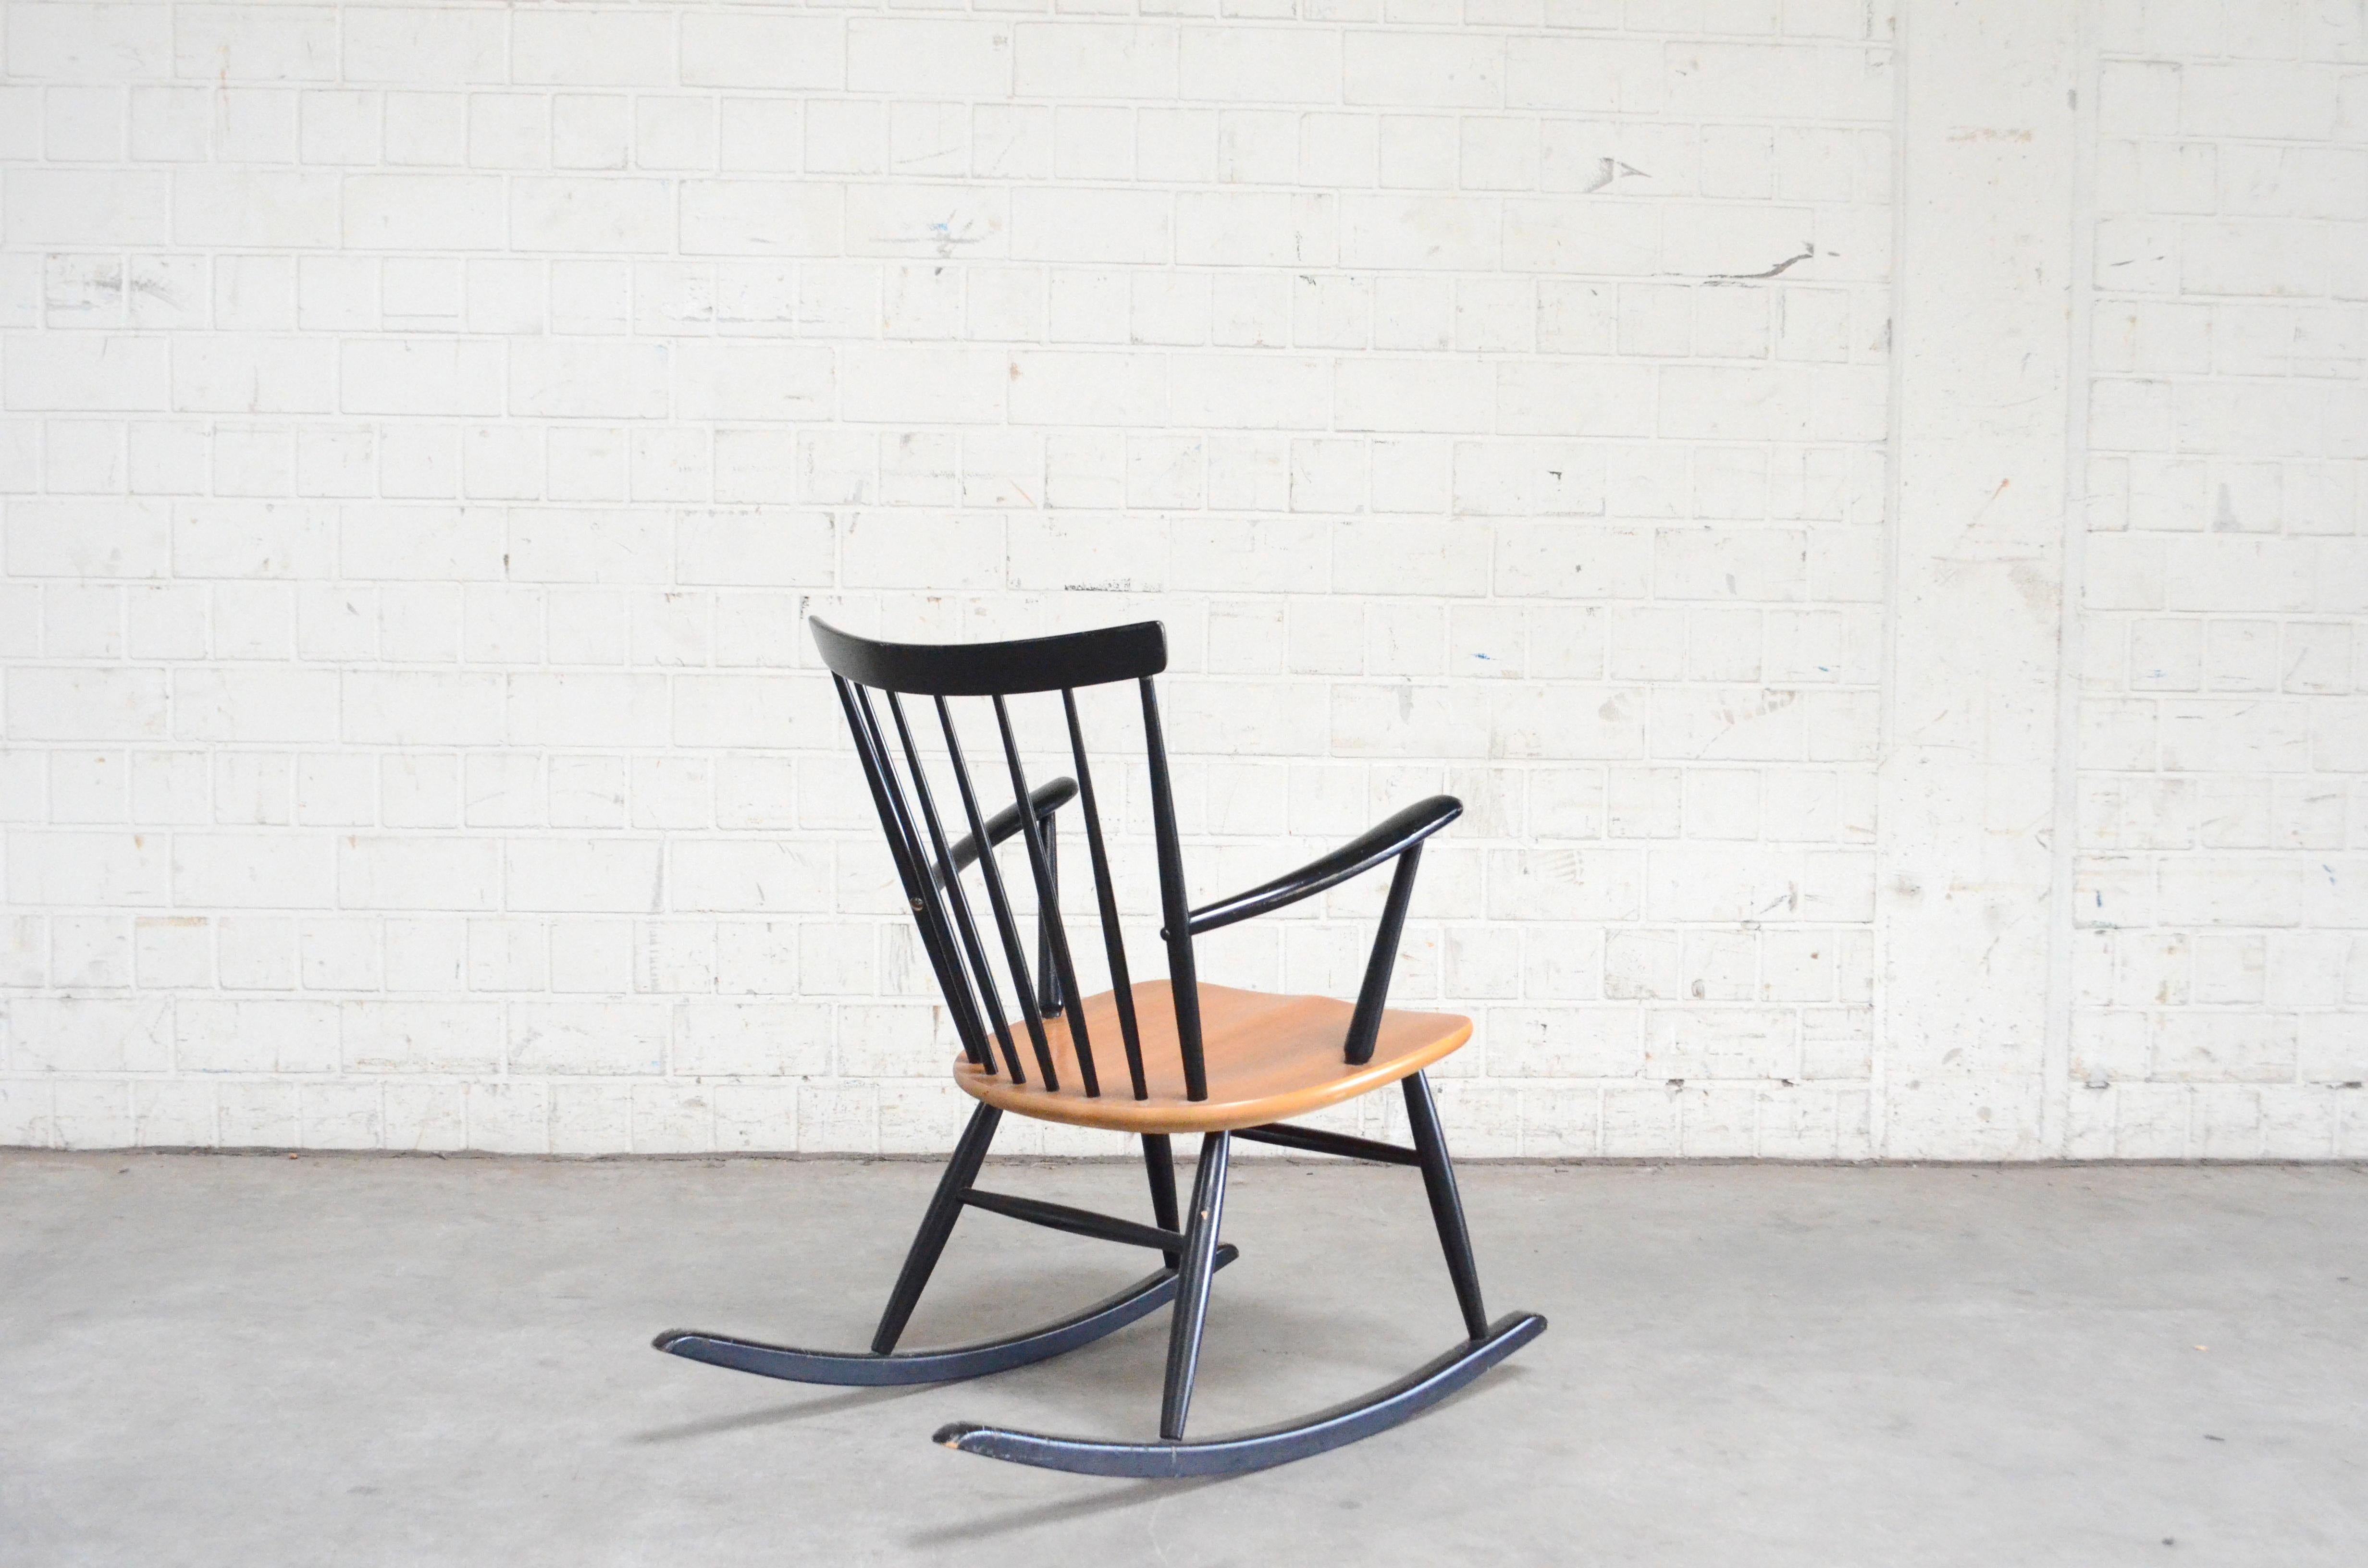 Rocking Chair Rocker Design by Sven Erik Fryklund by Hagafors 2